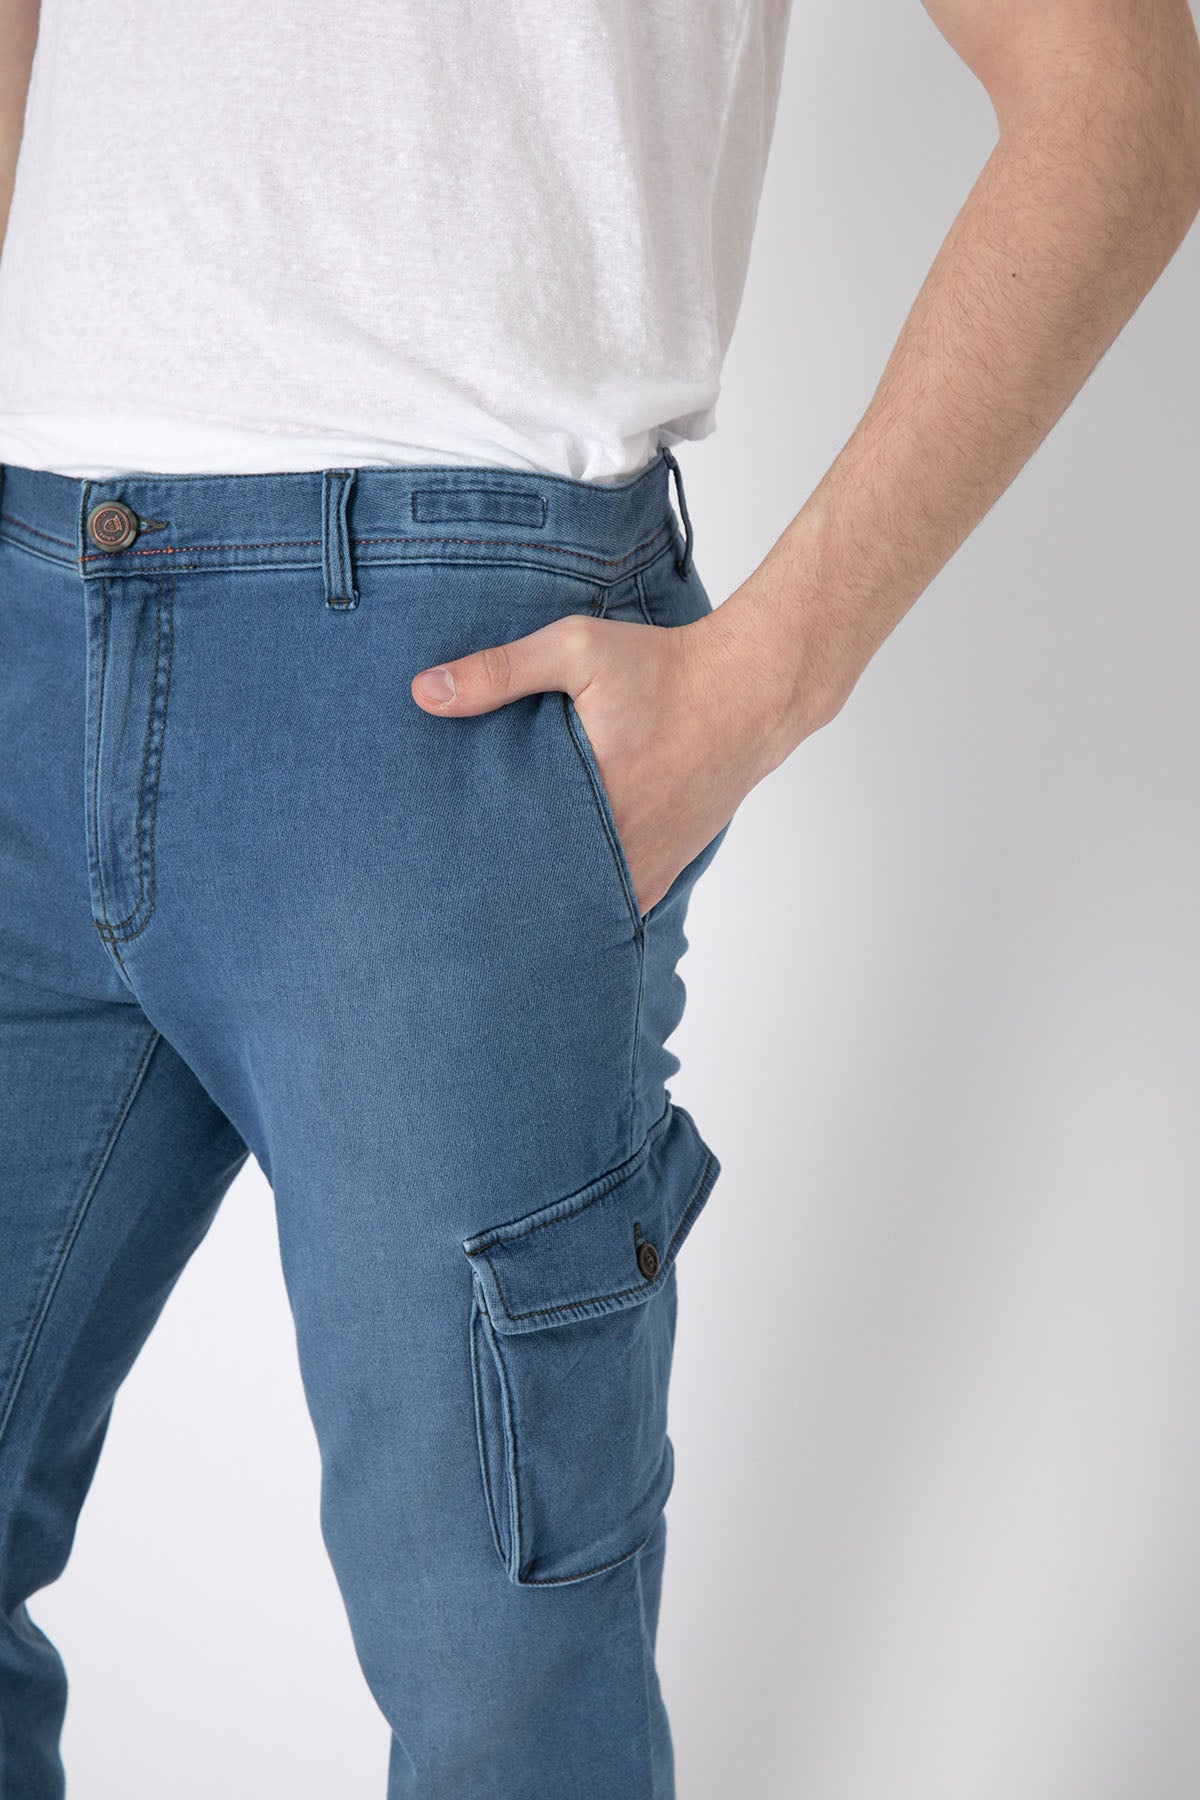 Richard J. Brown Slim Fit Yandan Cepli Kargo Jeans Pantolon-Libas Trendy Fashion Store